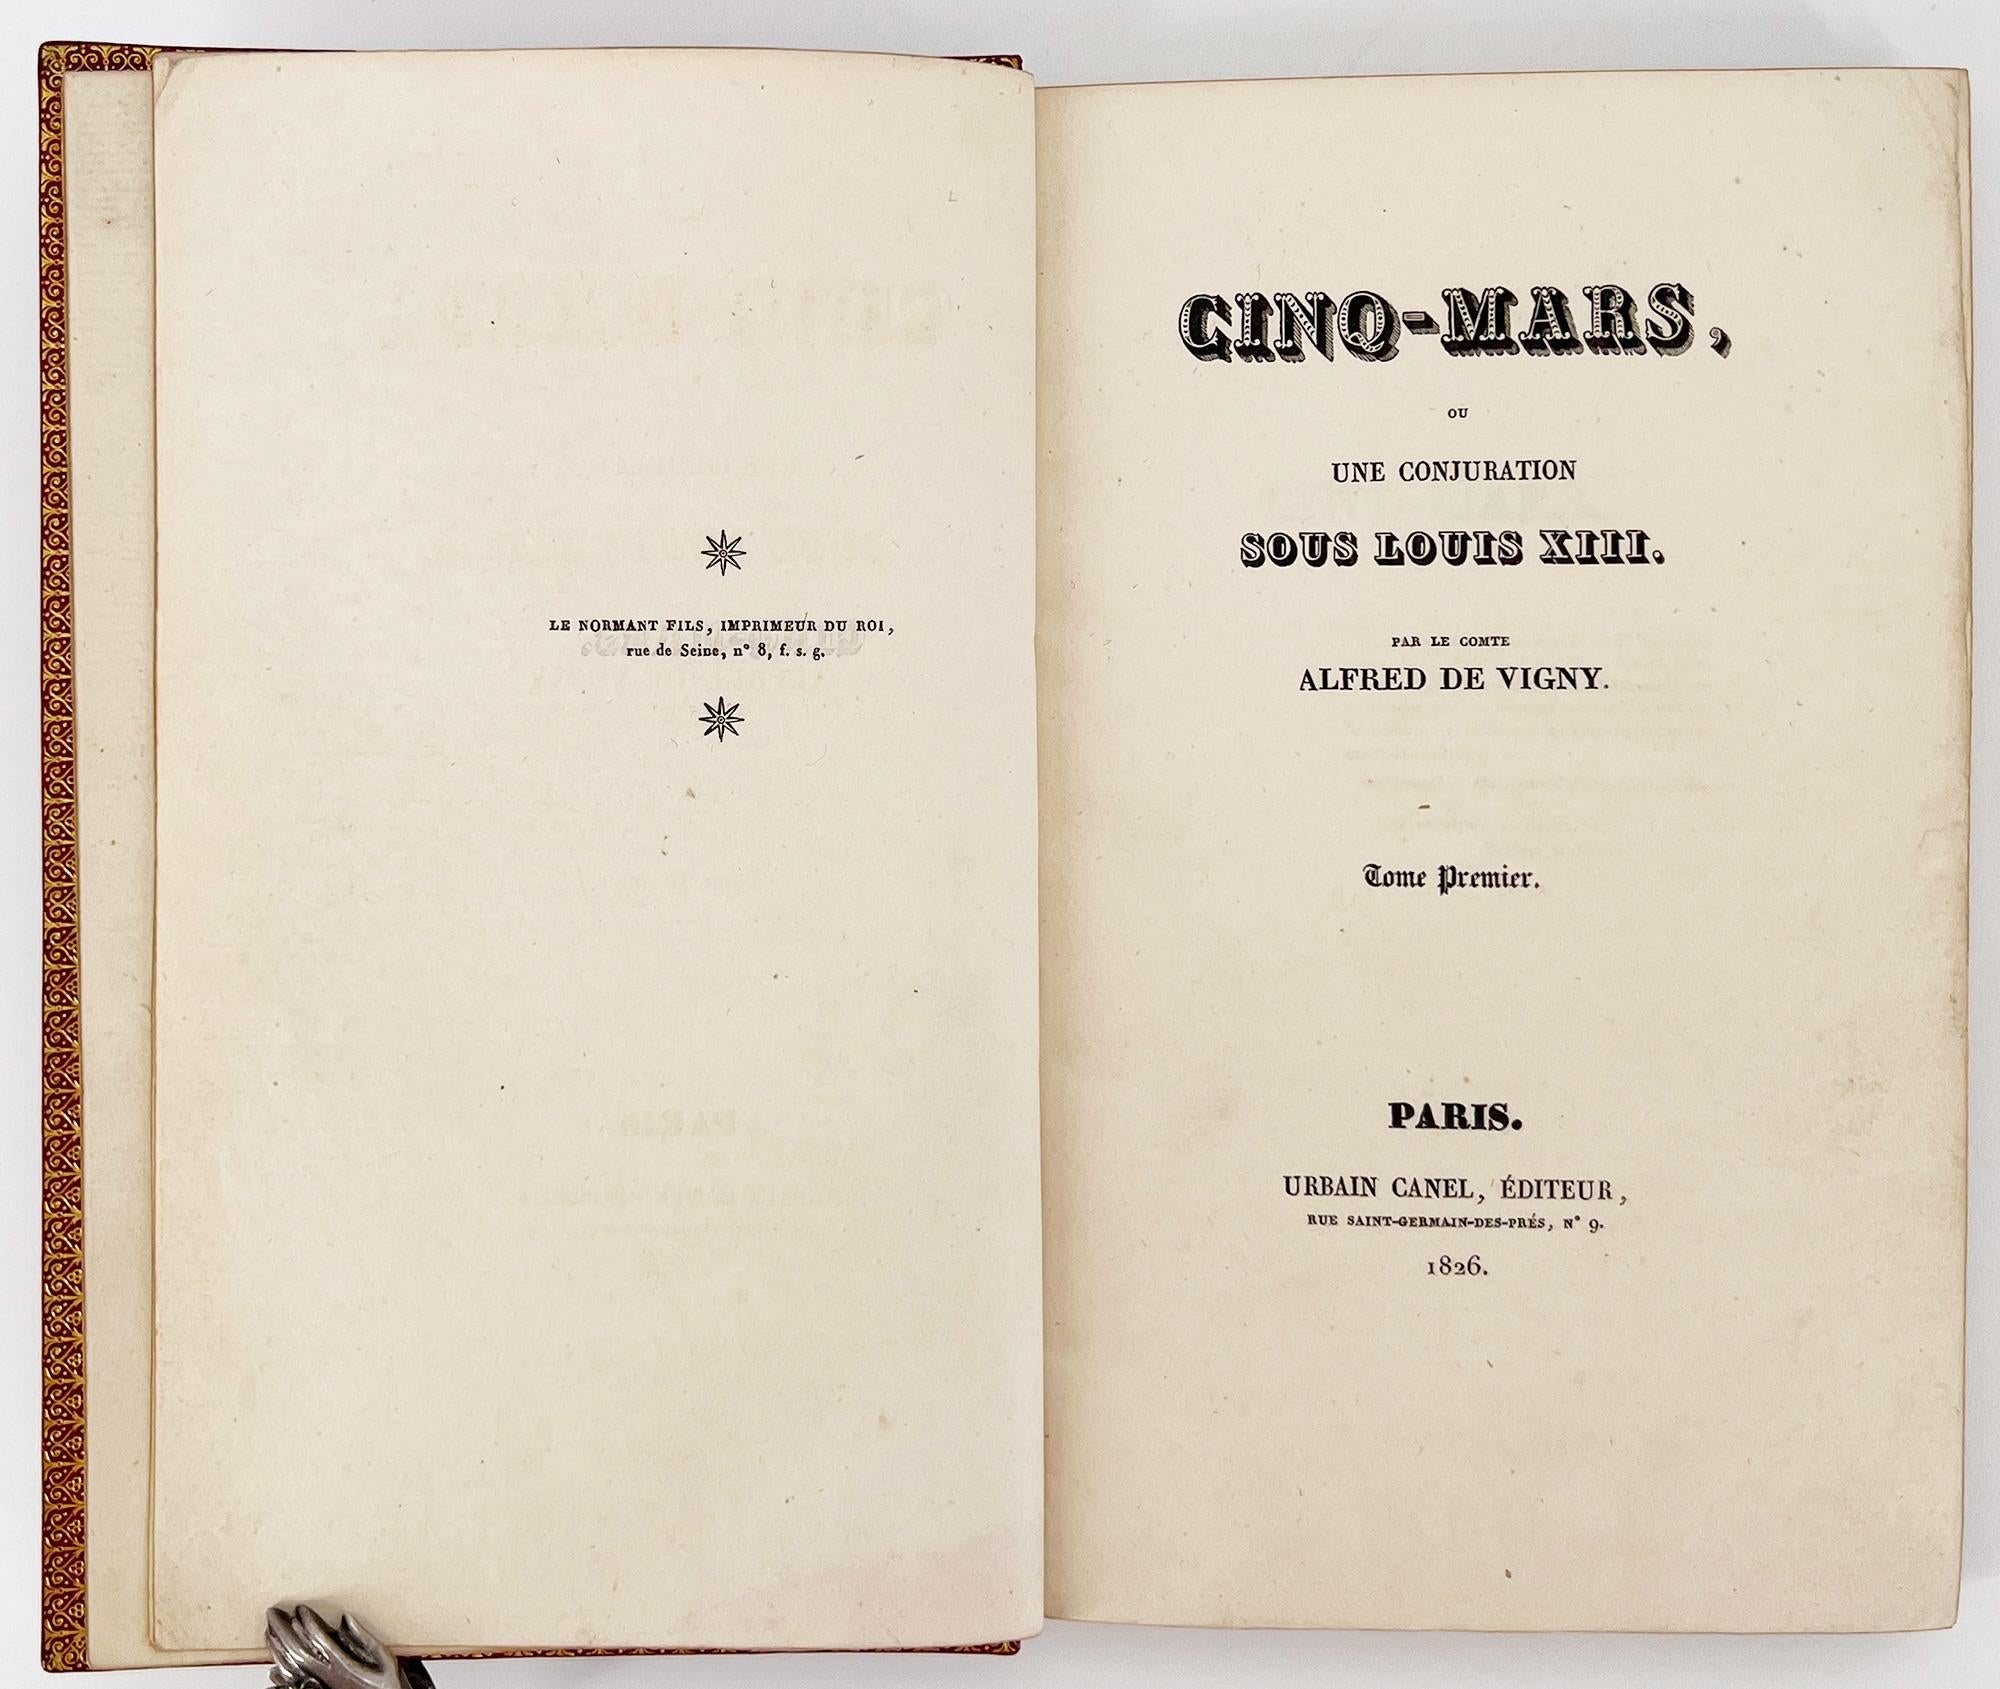 Paris: Urbain Canel, Editeur, 1826. Erste Ausgabe. 2 BÄNDER
8vo; 8 3/8 x 5 1/8 Zoll (213 x 130 mm), Bd. 1: [4], 4, 411, 1 [4]; Bd. 2: [4], 4, 494, 1, [4]. Bindung signiert LORTIC in Gold auf Turn-Ins und kleine Tag auf f.e.p., elegante rote Marokko